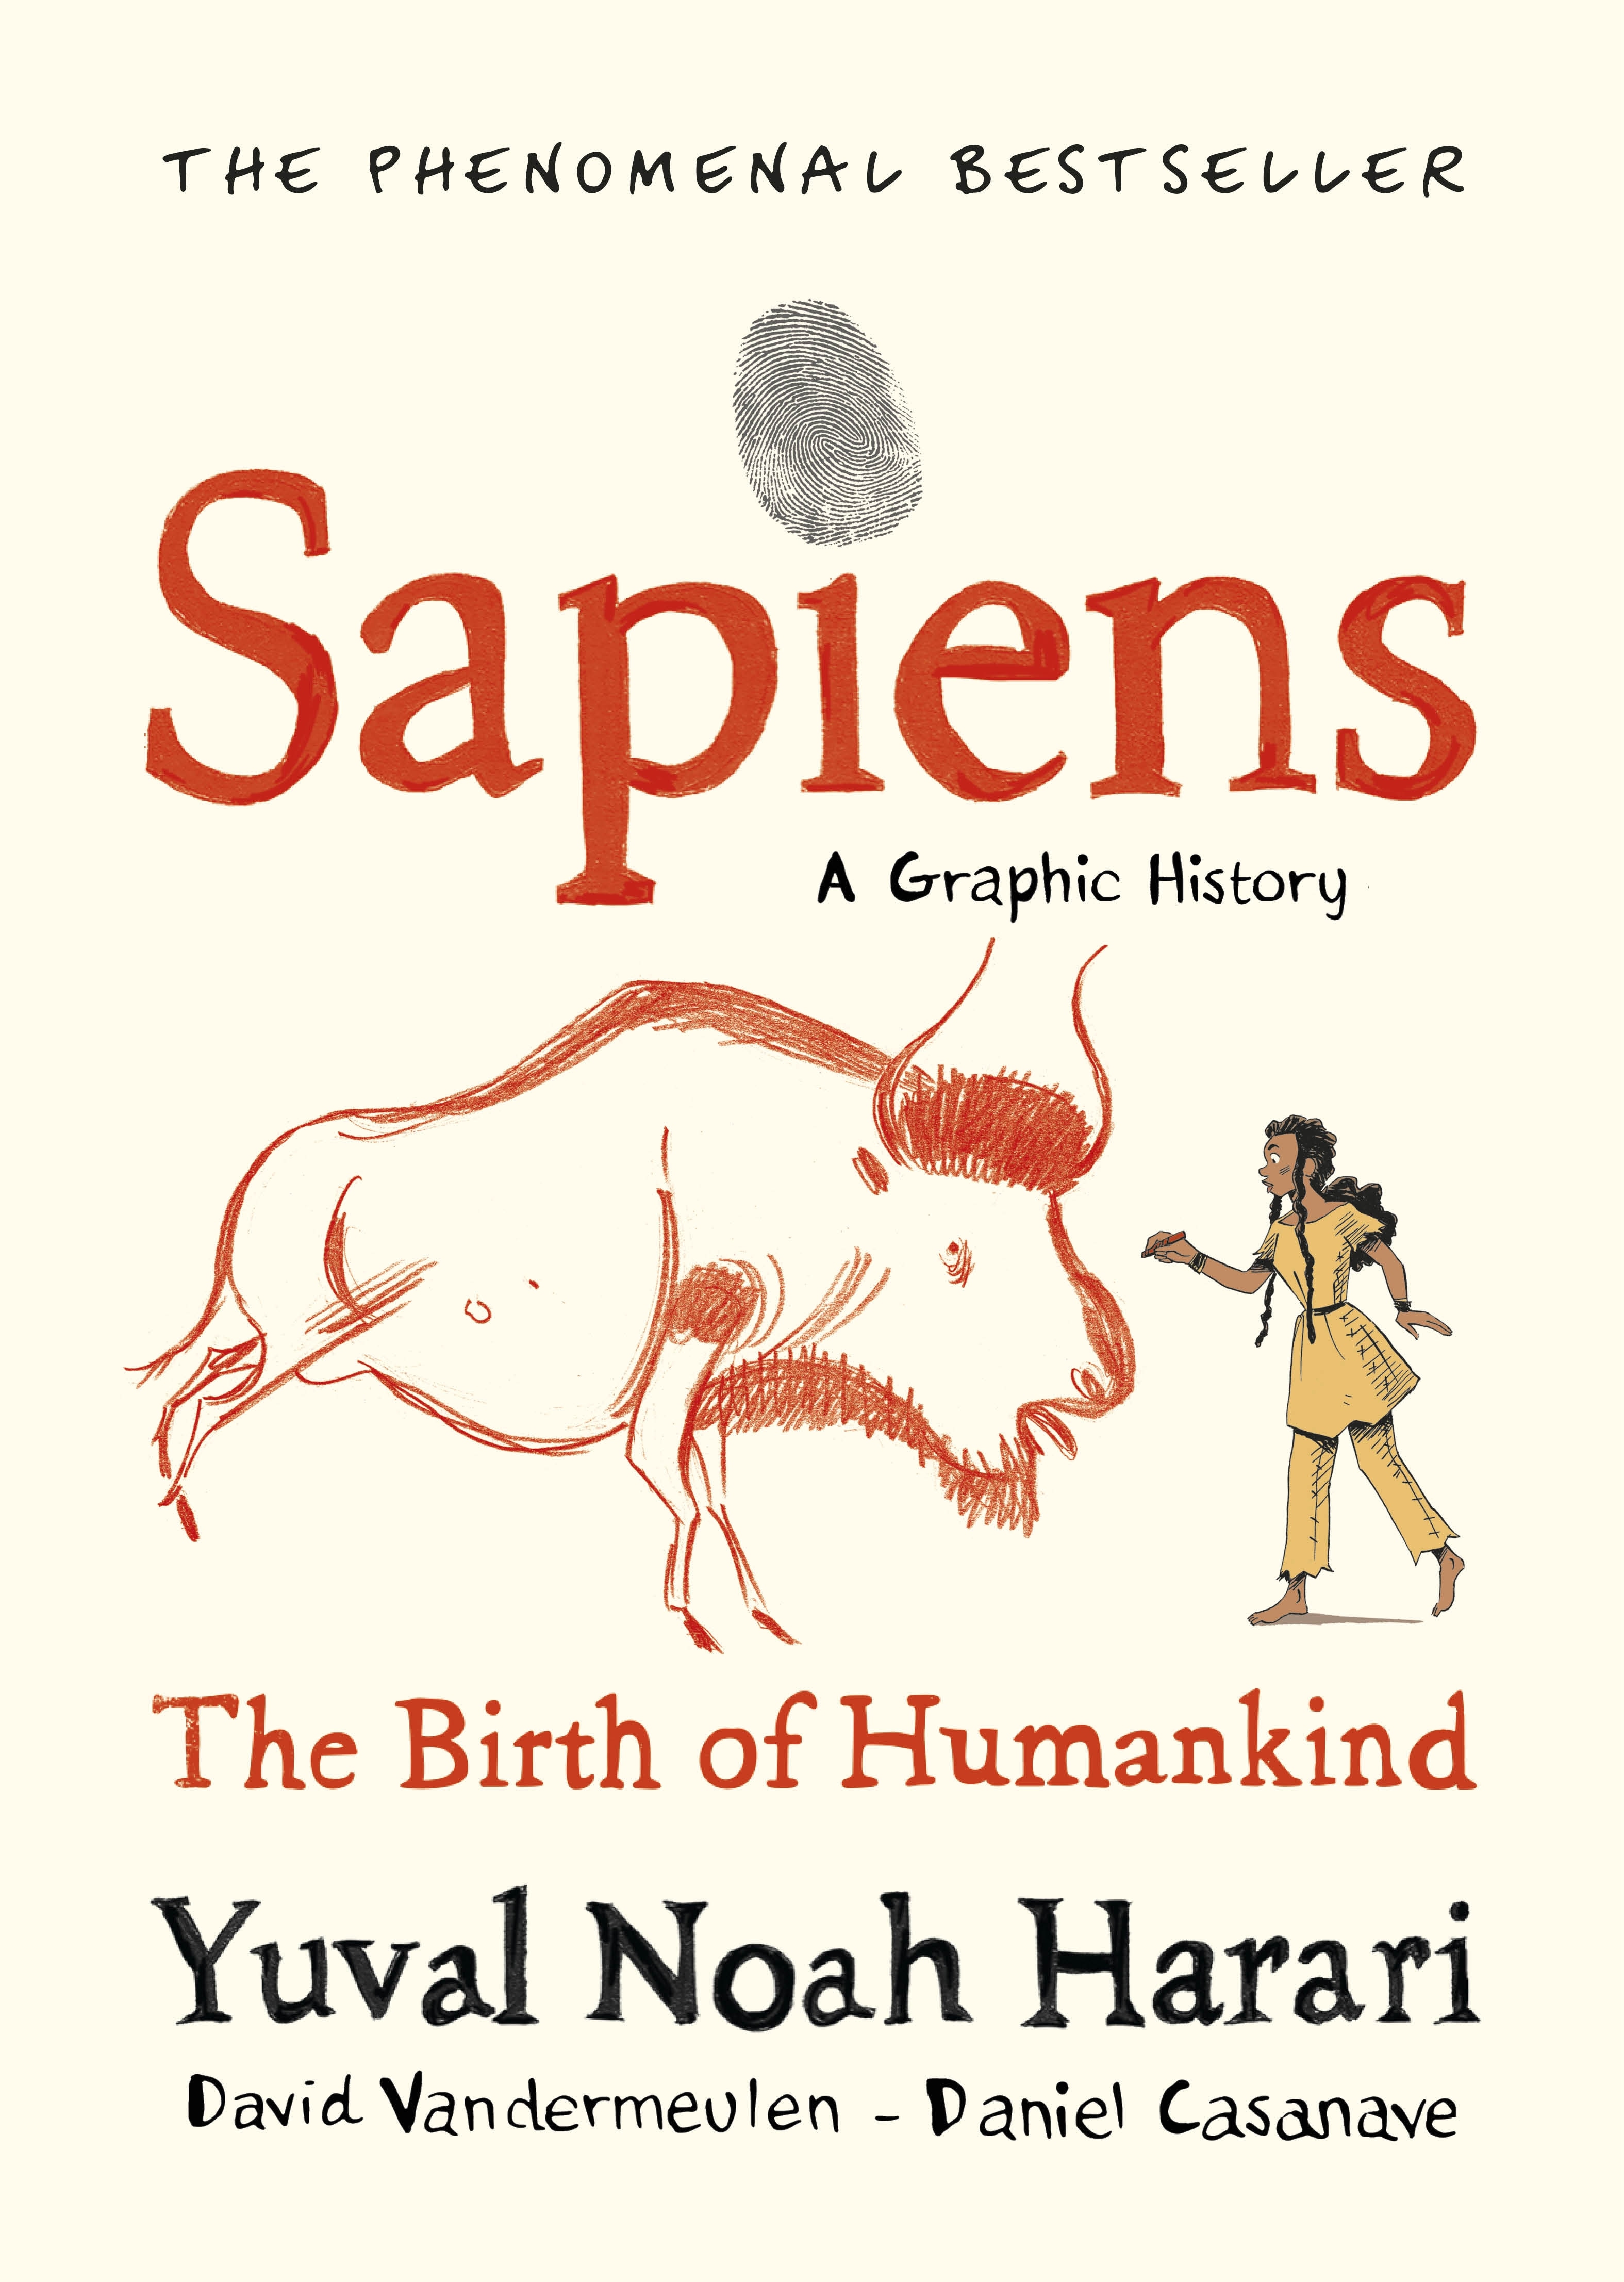 Book “Sapiens A Graphic History, Volume 1” by Yuval Noah Harari — November 12, 2020